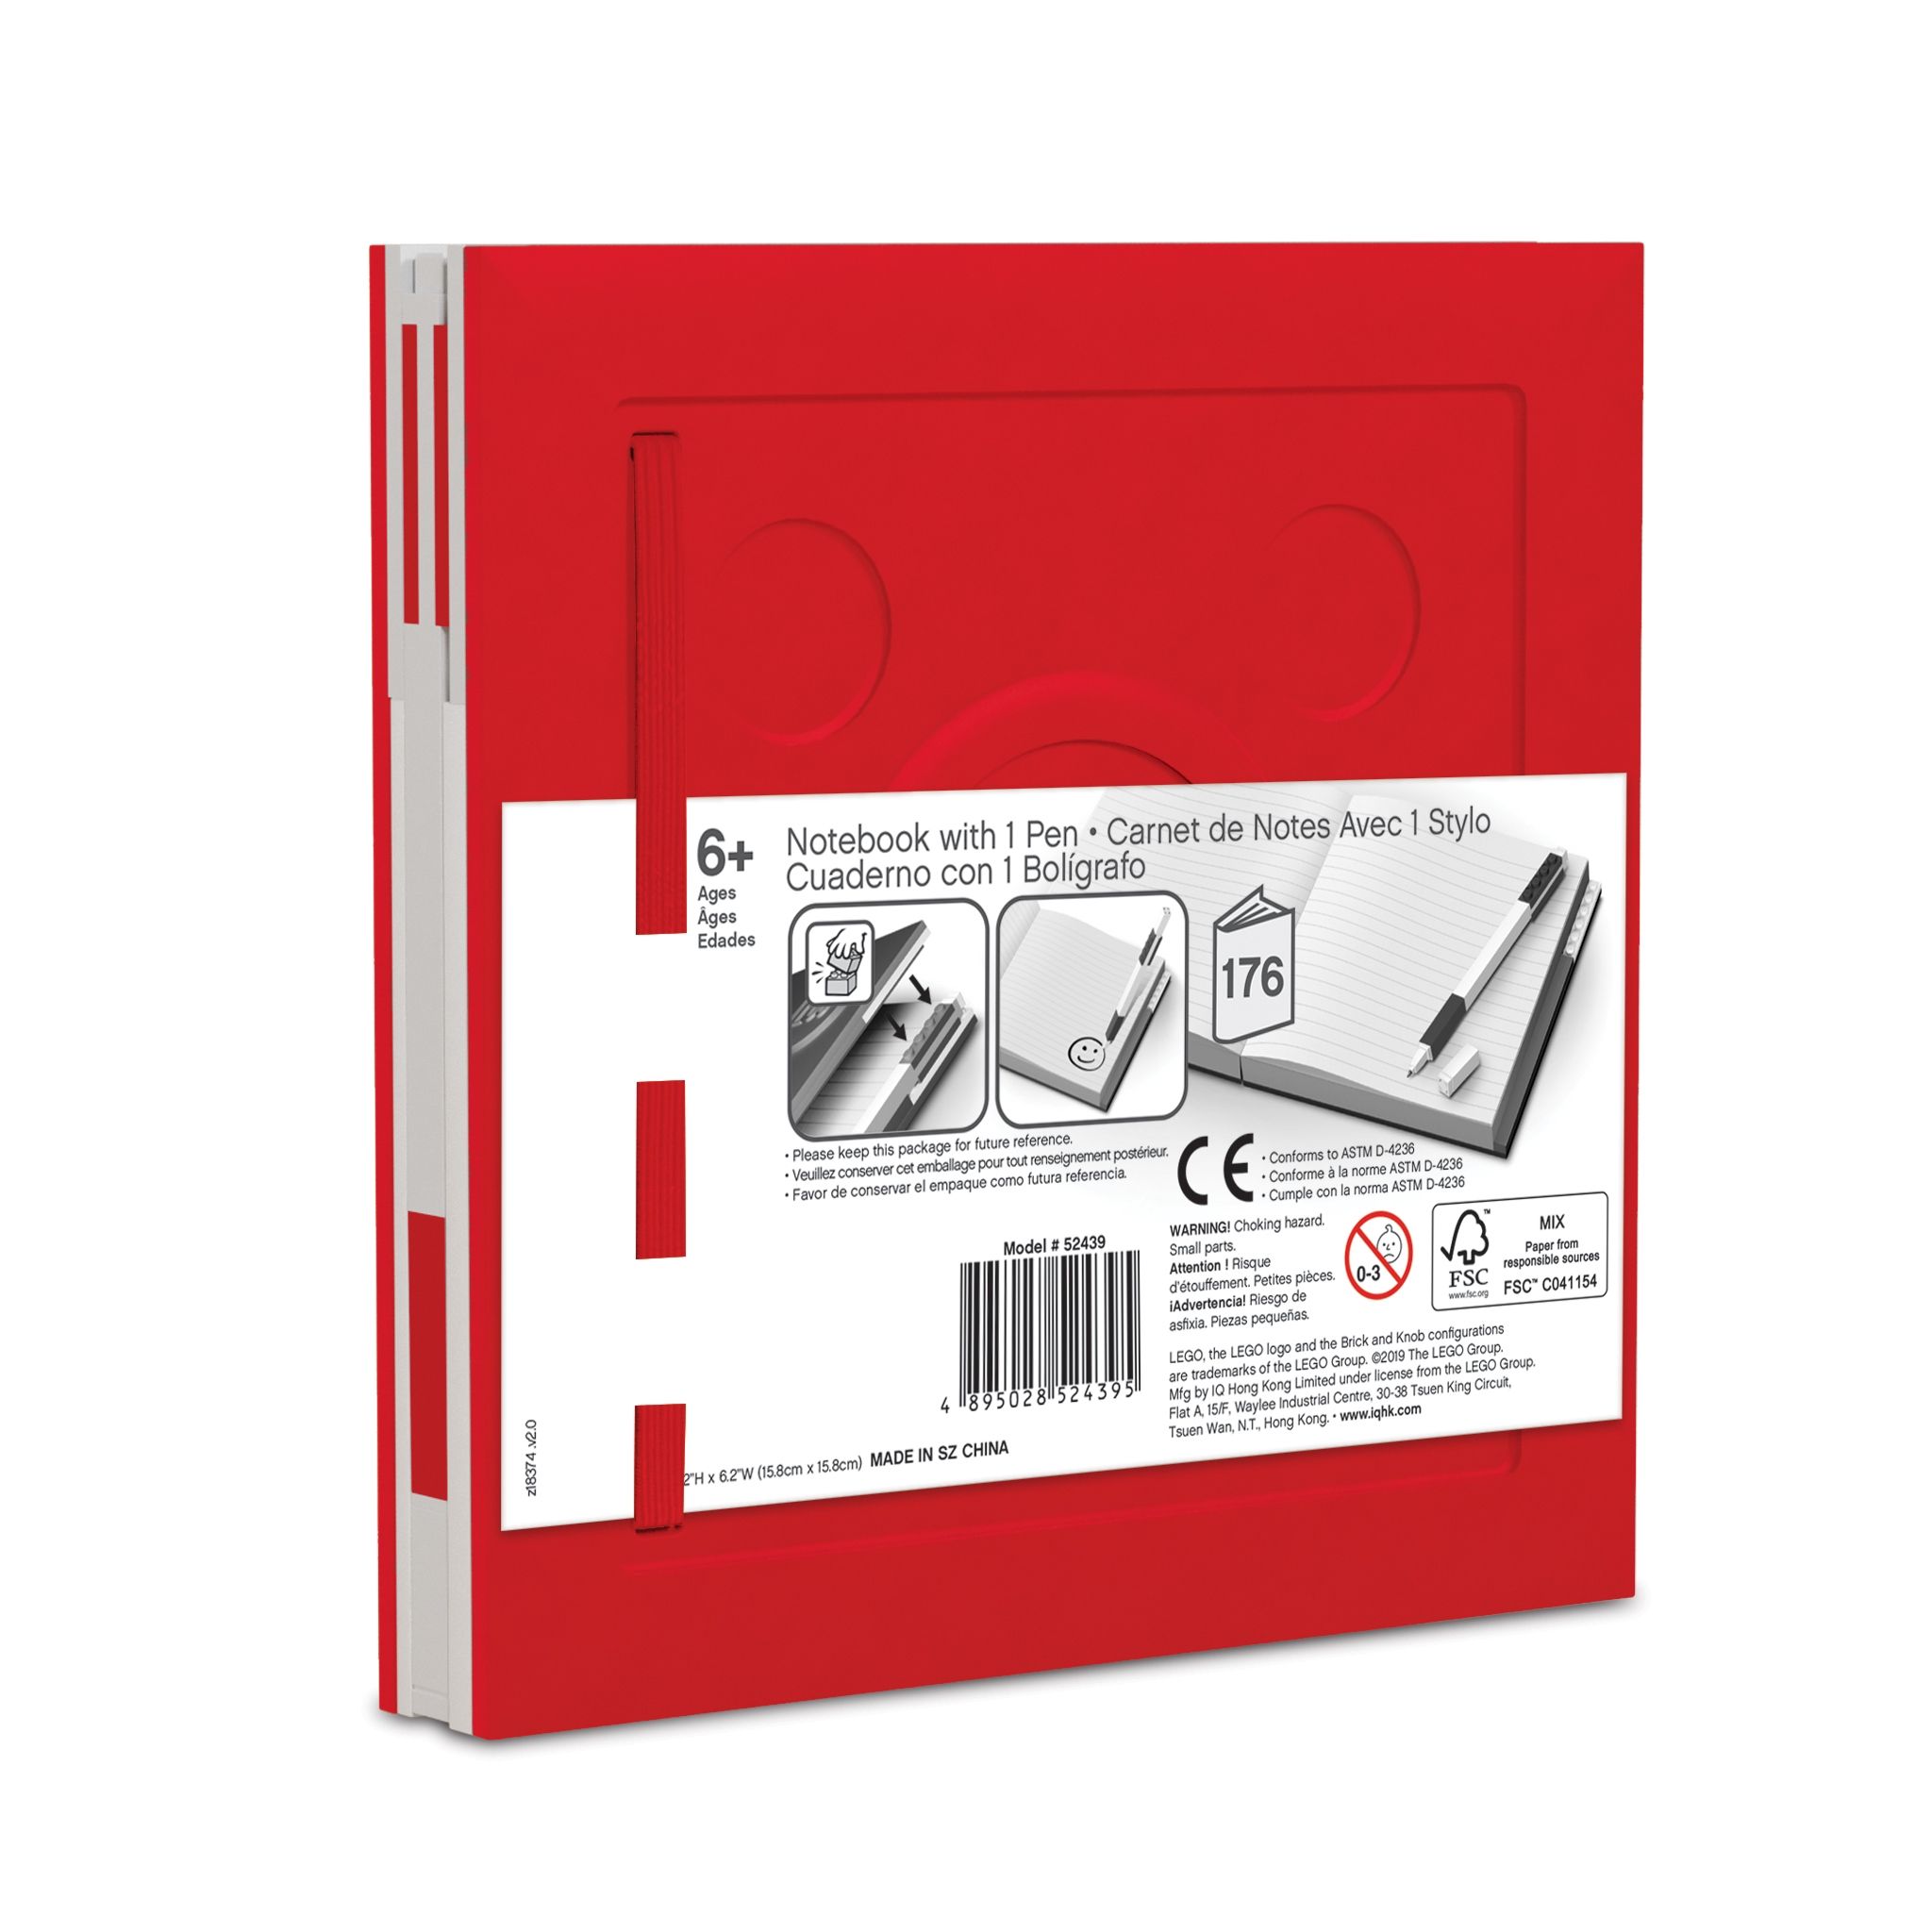 LEGO Gear 5007239 Verschließbares Notizbuch mit Gelschreiber in Rot LEGO_5007239_alt2.jpg